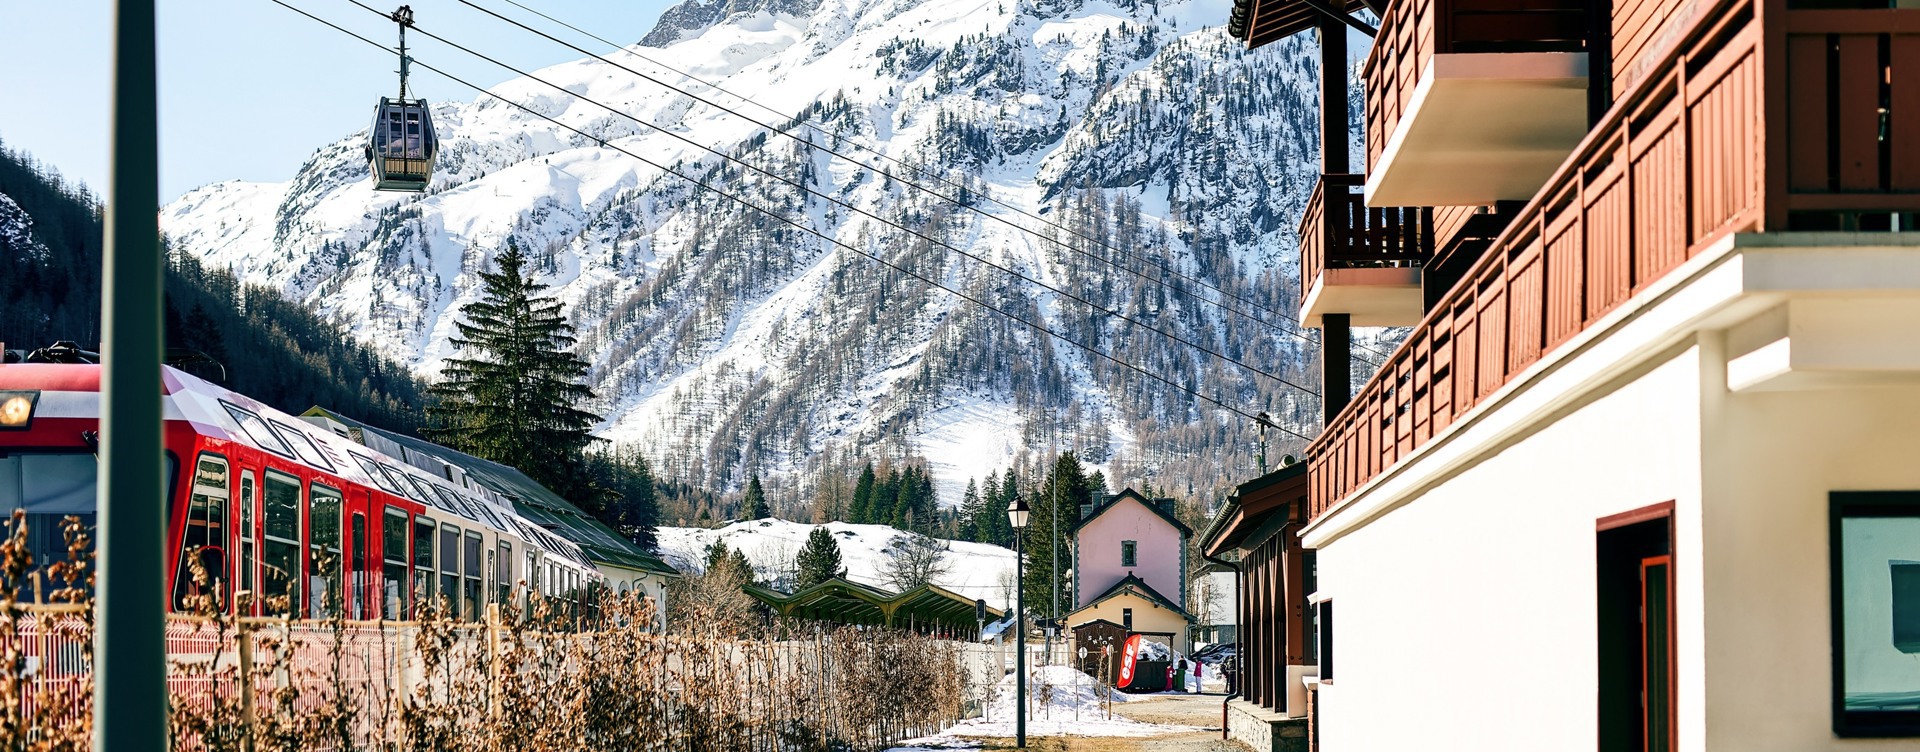 Disfruta del centro de Chamonix
o lánzate por las pistas de los dominios de esquí que la rodean